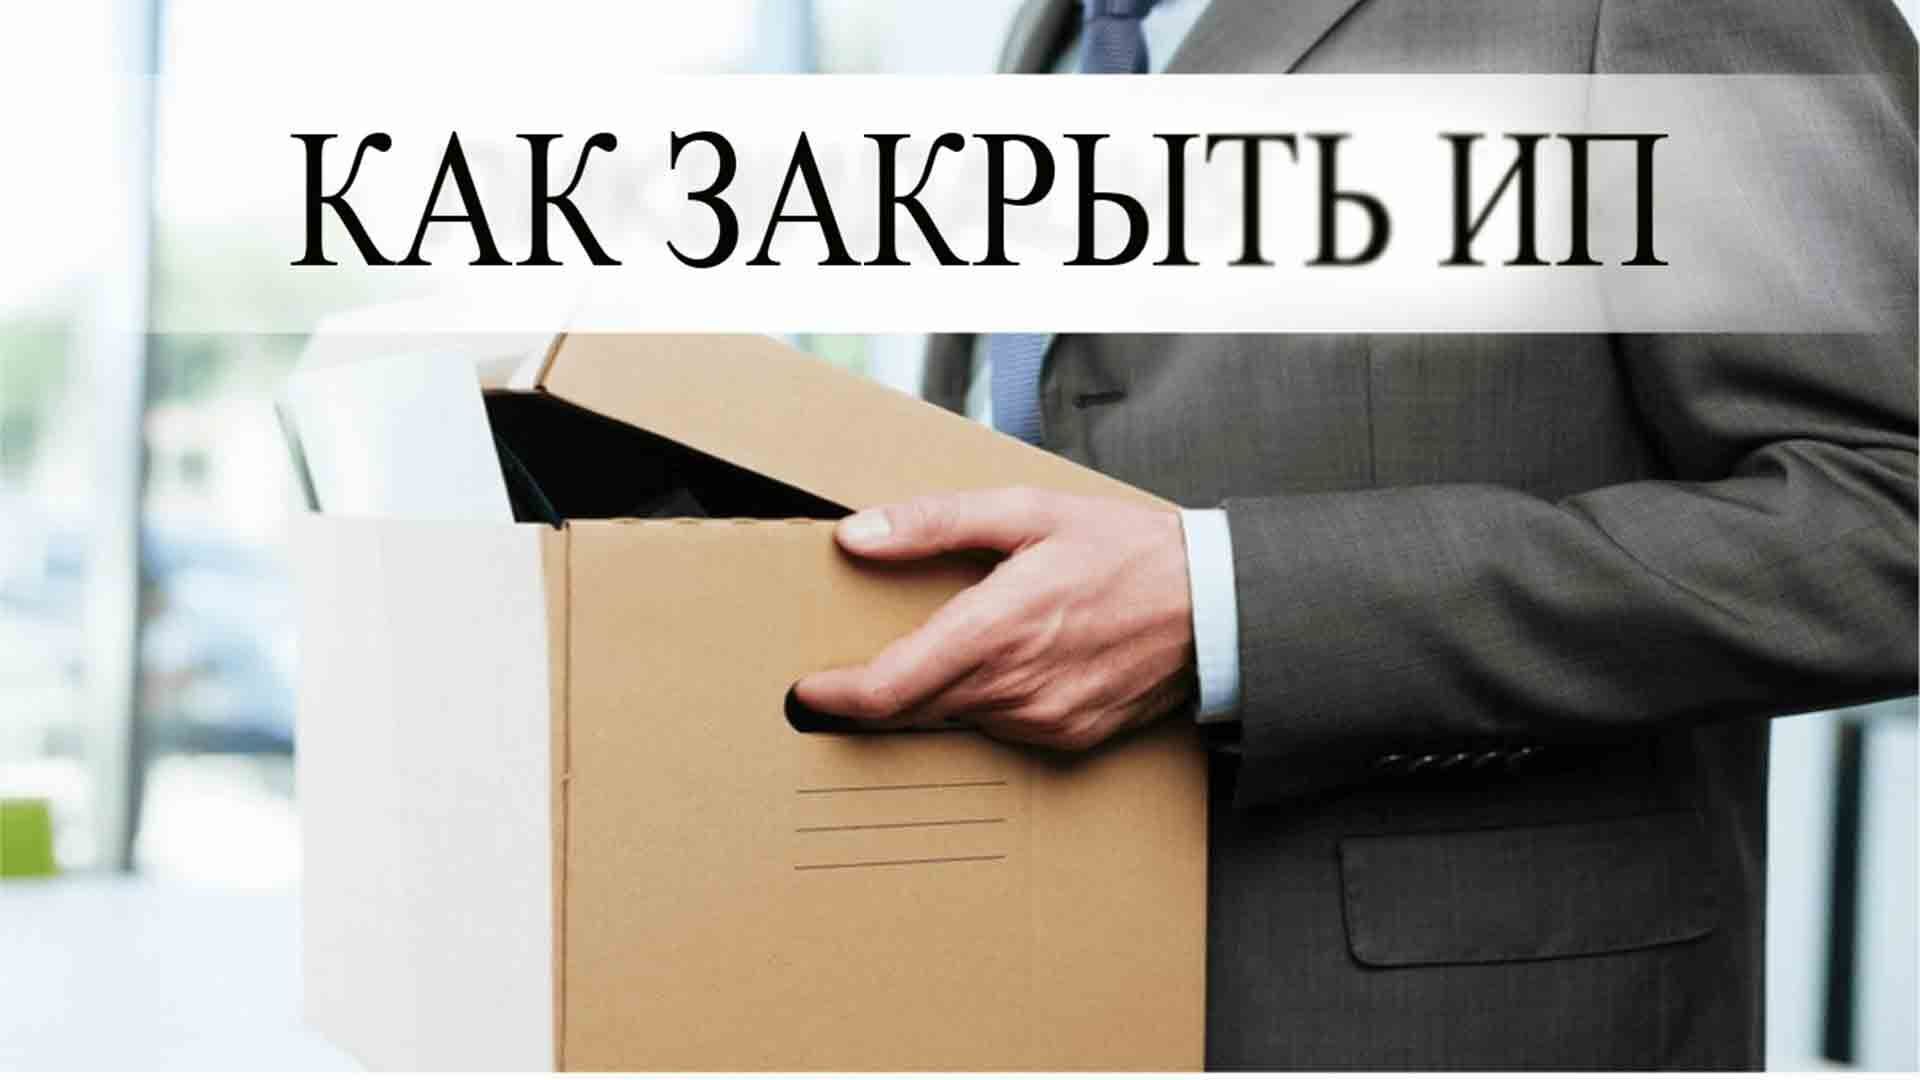 Закрытие ип стоимость услуги москва свидетельство о государственной регистрации ооо образец